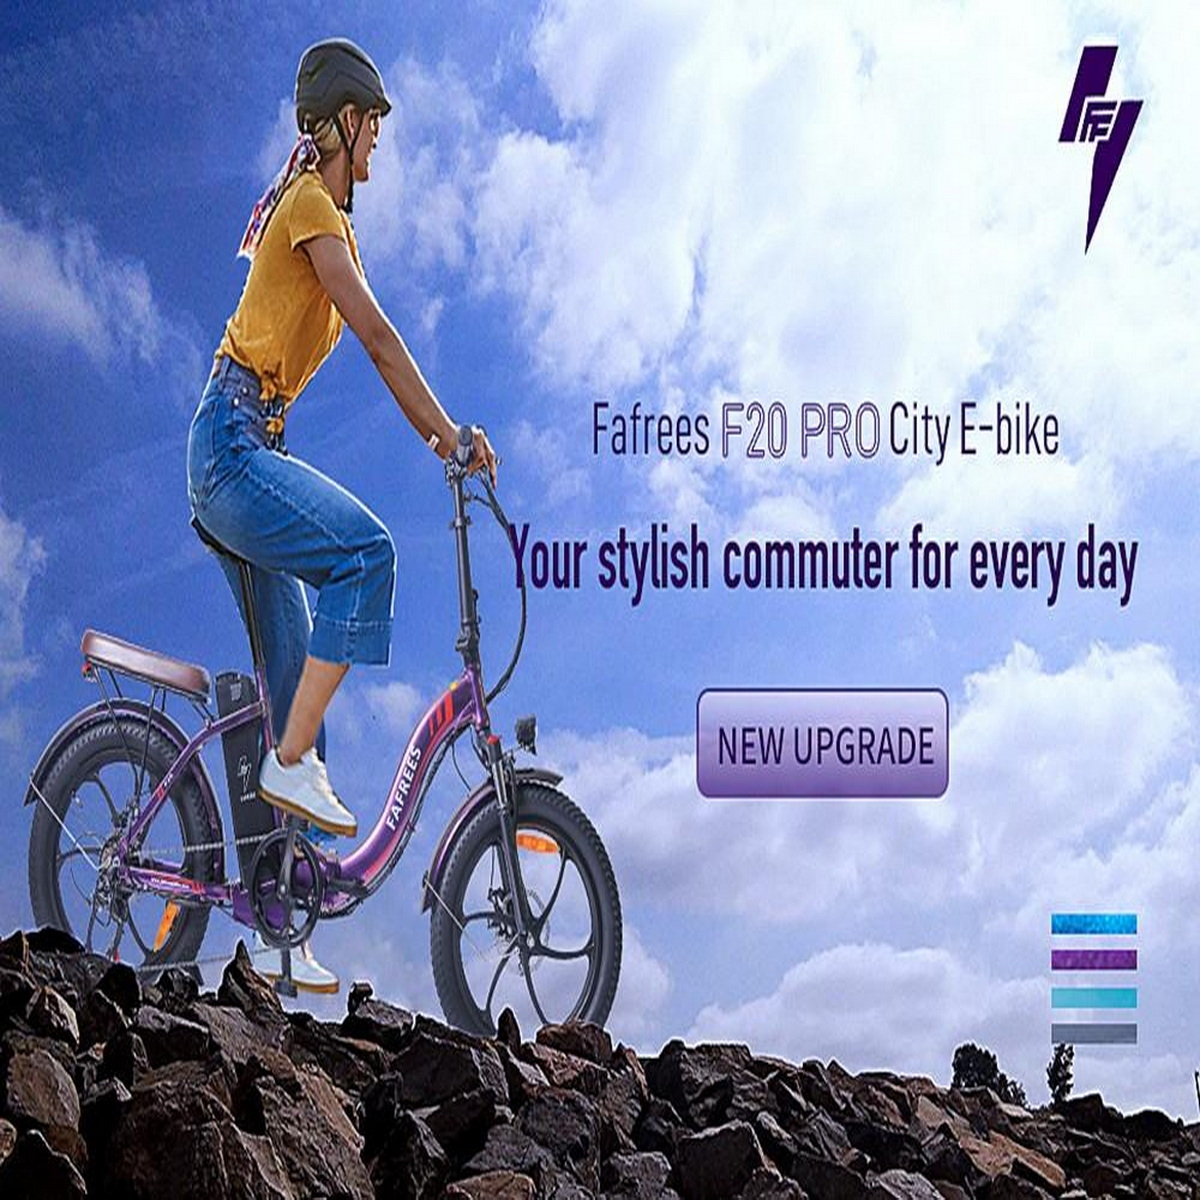 Zoll, Kompakt-/Faltrad 20 (Laufradgröße: FAFREES Blau) F20 Pro Unisex-Rad,